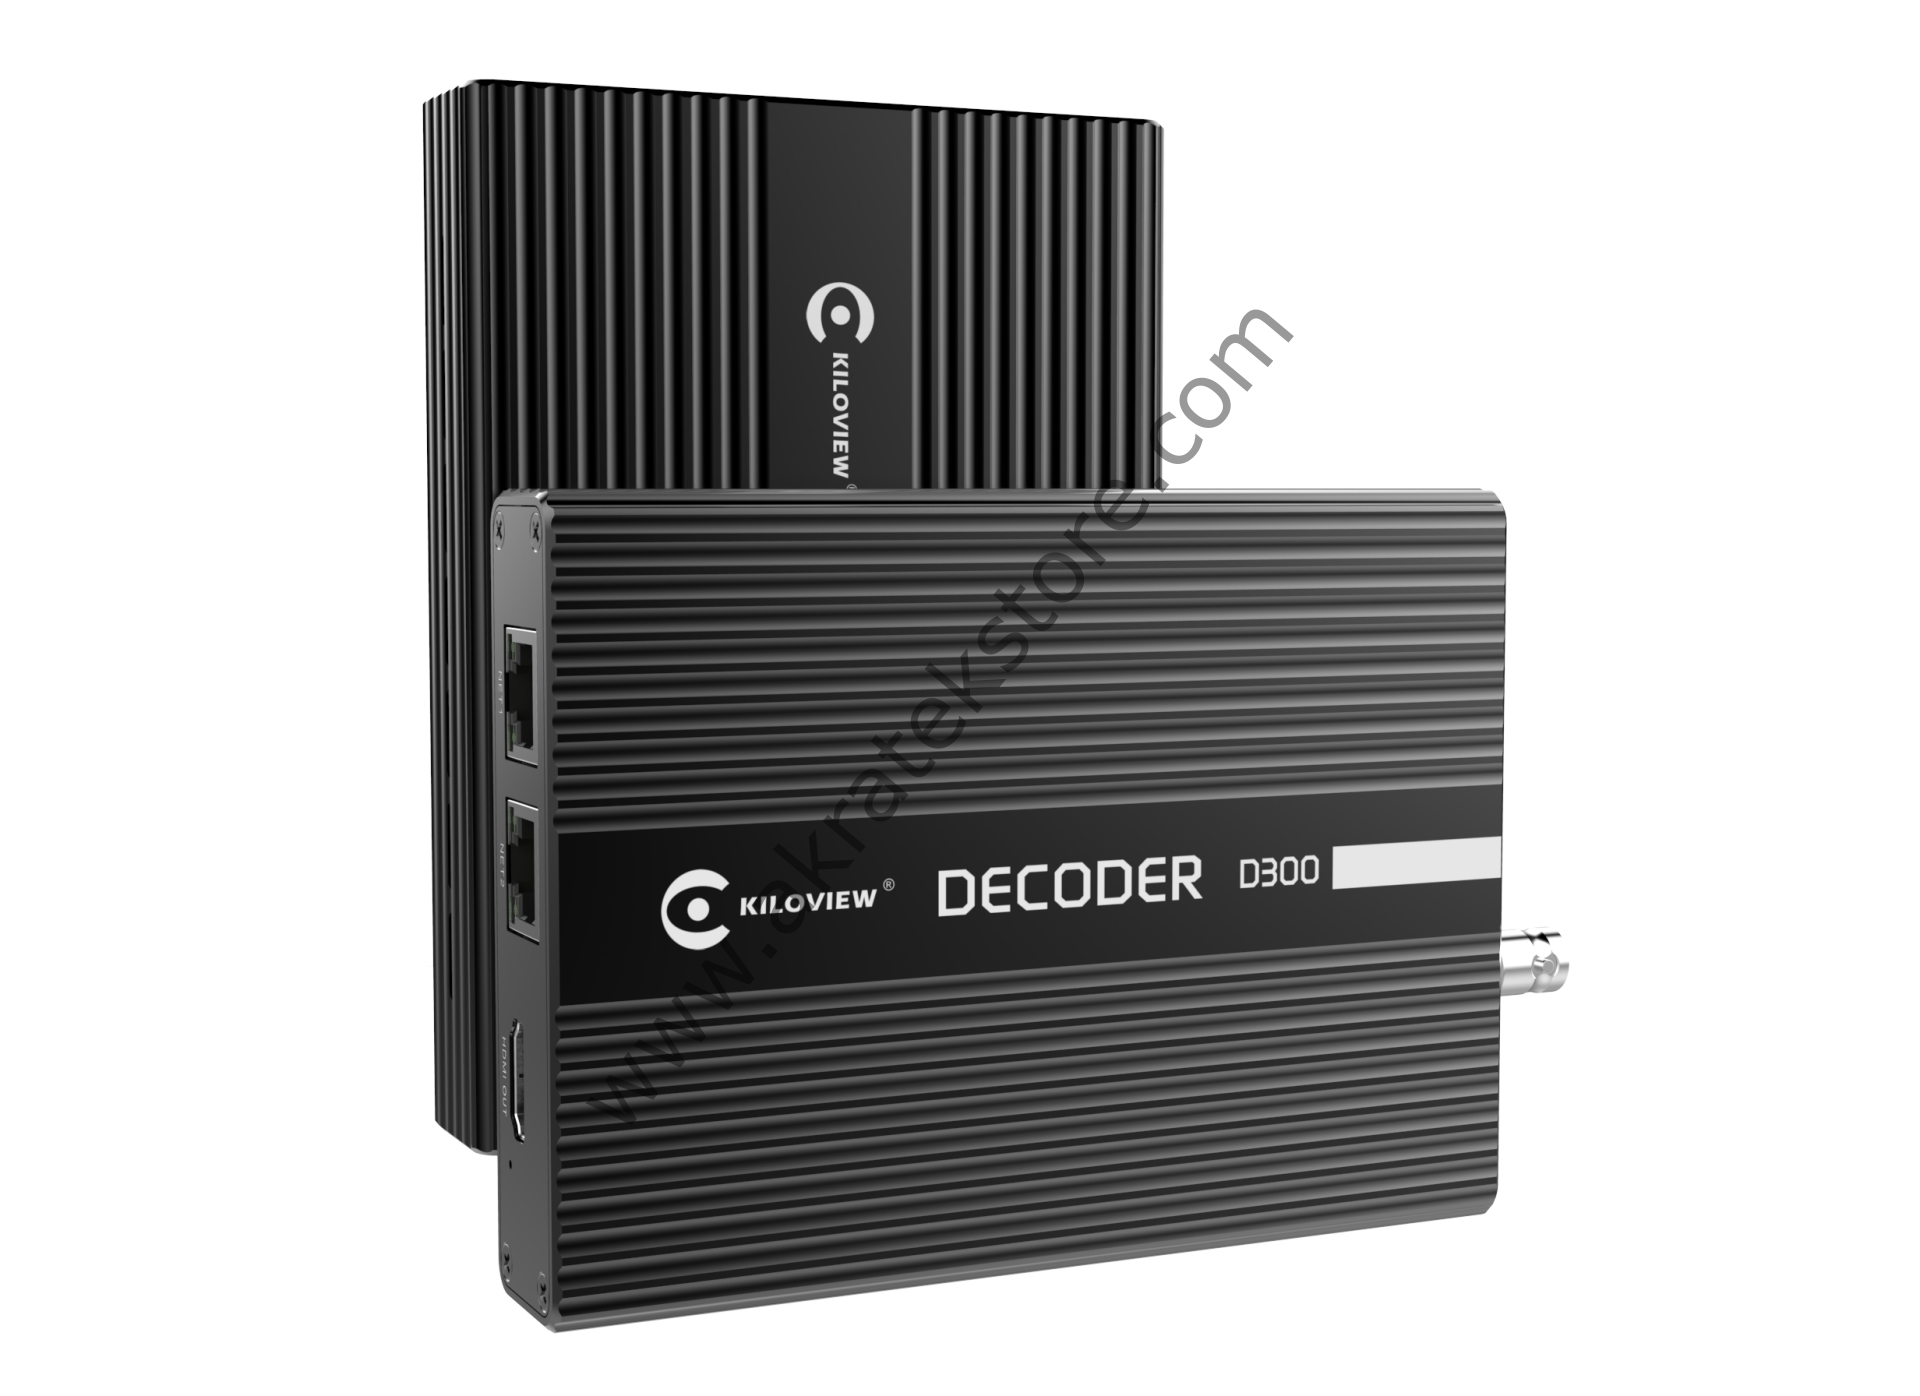 D300 4K Decoder